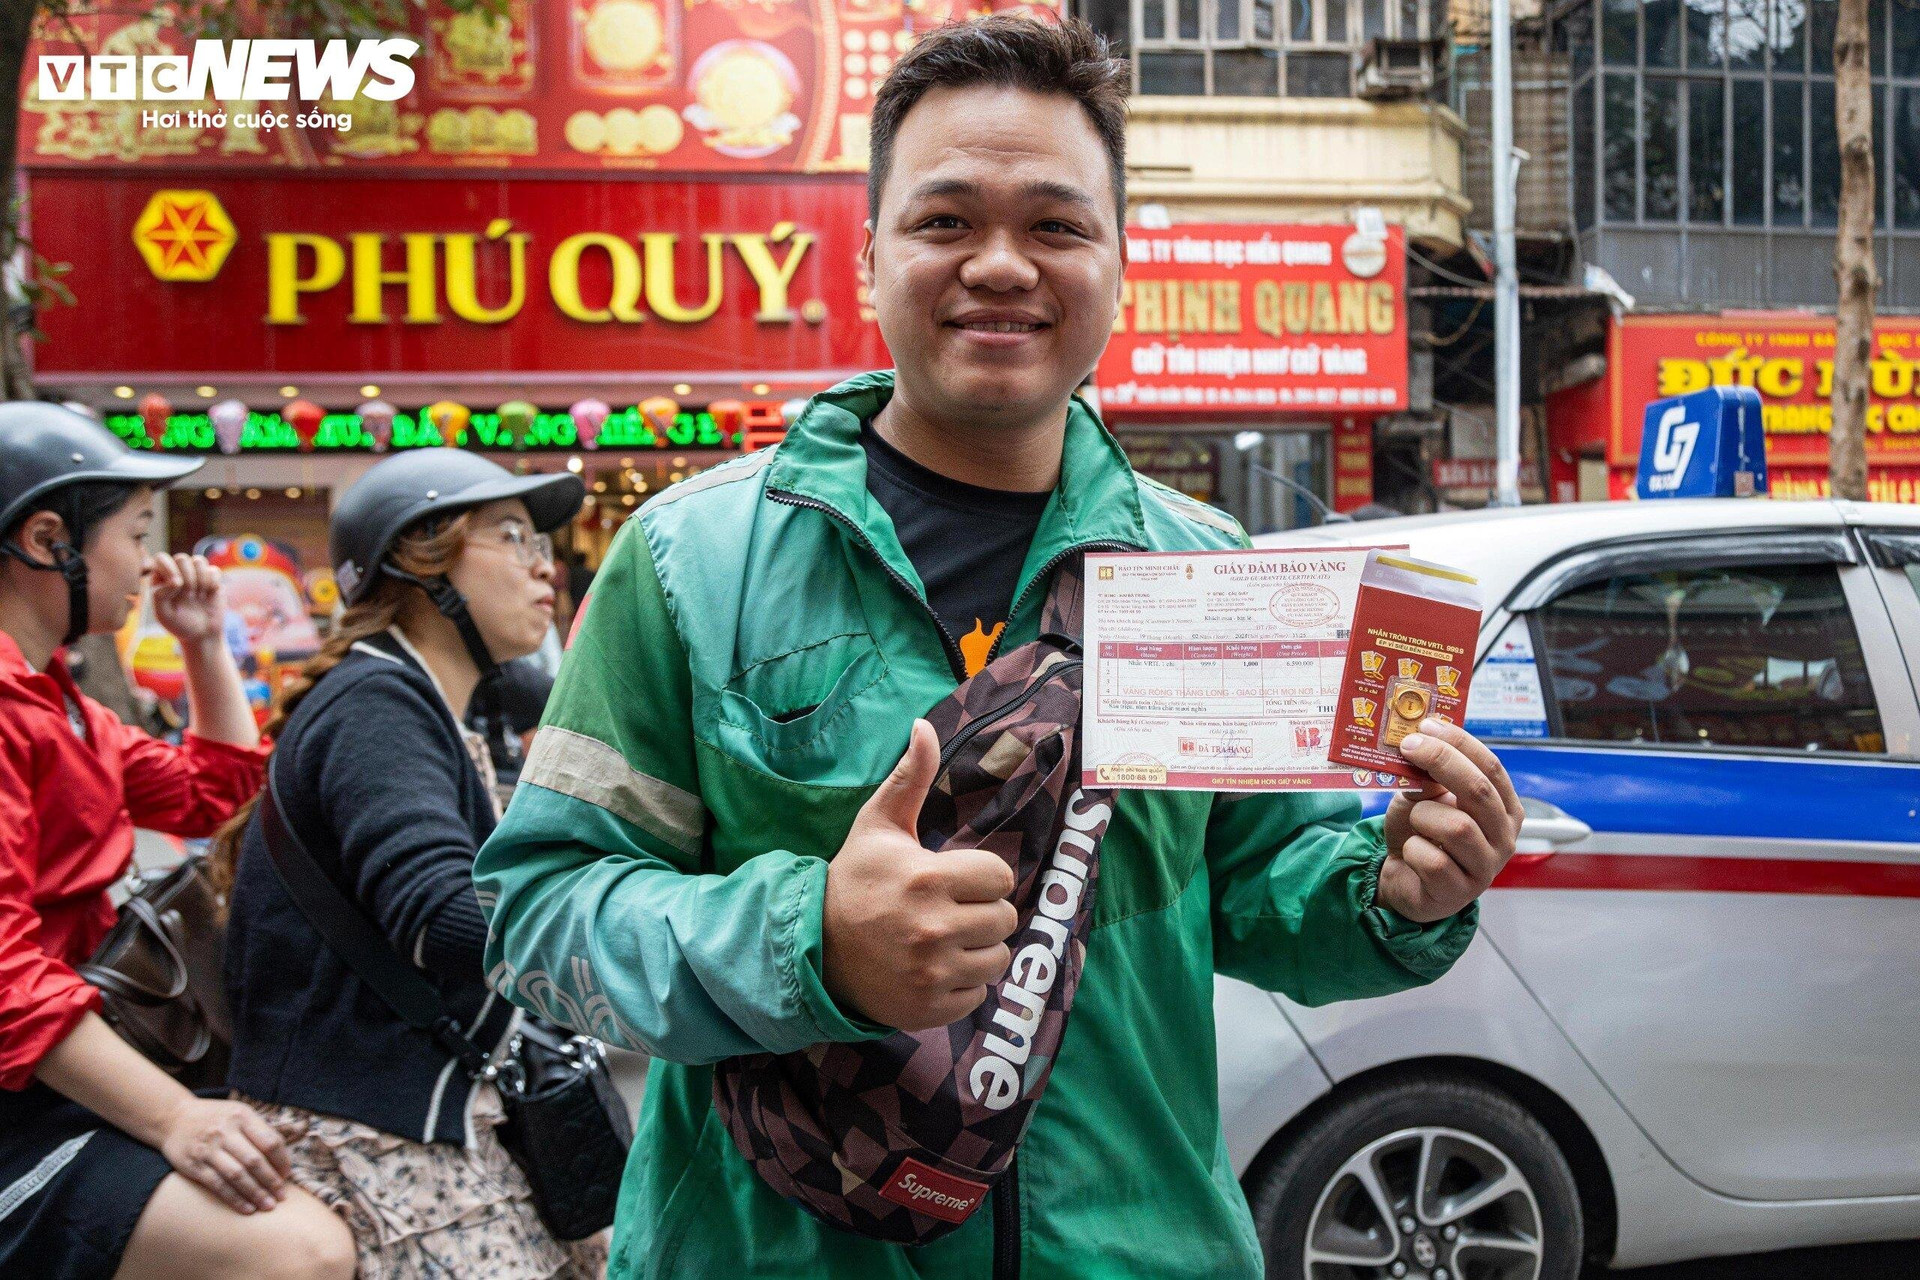 Anh Nguyễn Văn Trường, 25 tuổi (ở Quốc Oai, Hà Nội), lái xe công nghệ cho biết: “Tôi tranh thủ lúc giờ tan tầm để đi mua vàng vì giờ này đường tắc, chở khách tốn xăng nên tôi không nhận cuốc